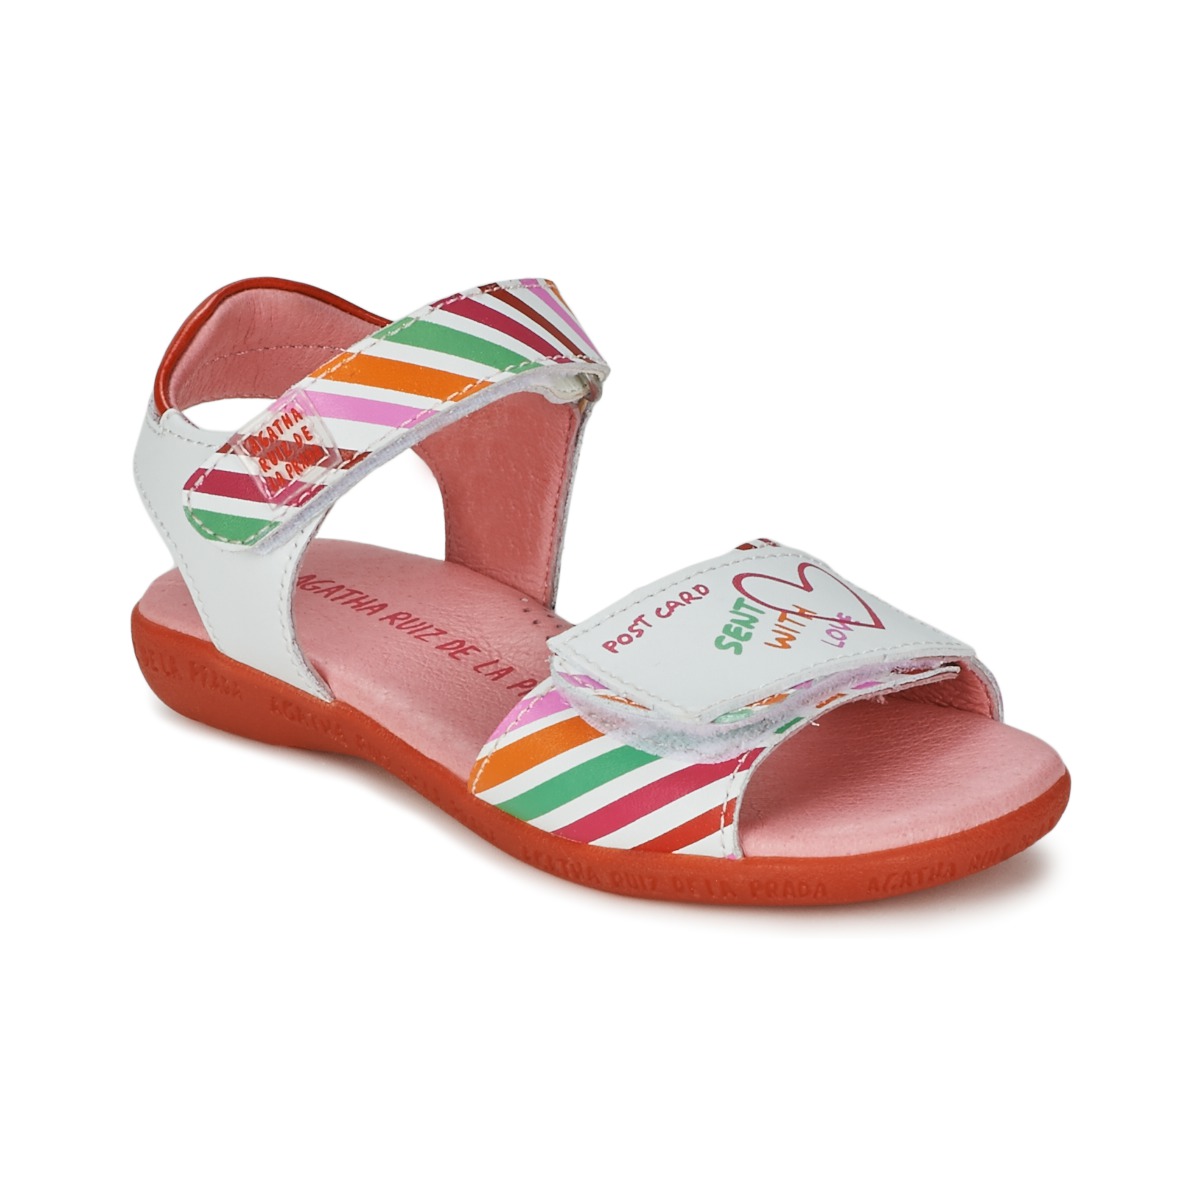 Παπούτσια Κορίτσι Σανδάλια / Πέδιλα Agatha Ruiz de la Prada CAZOLETA Άσπρο / Multicolour